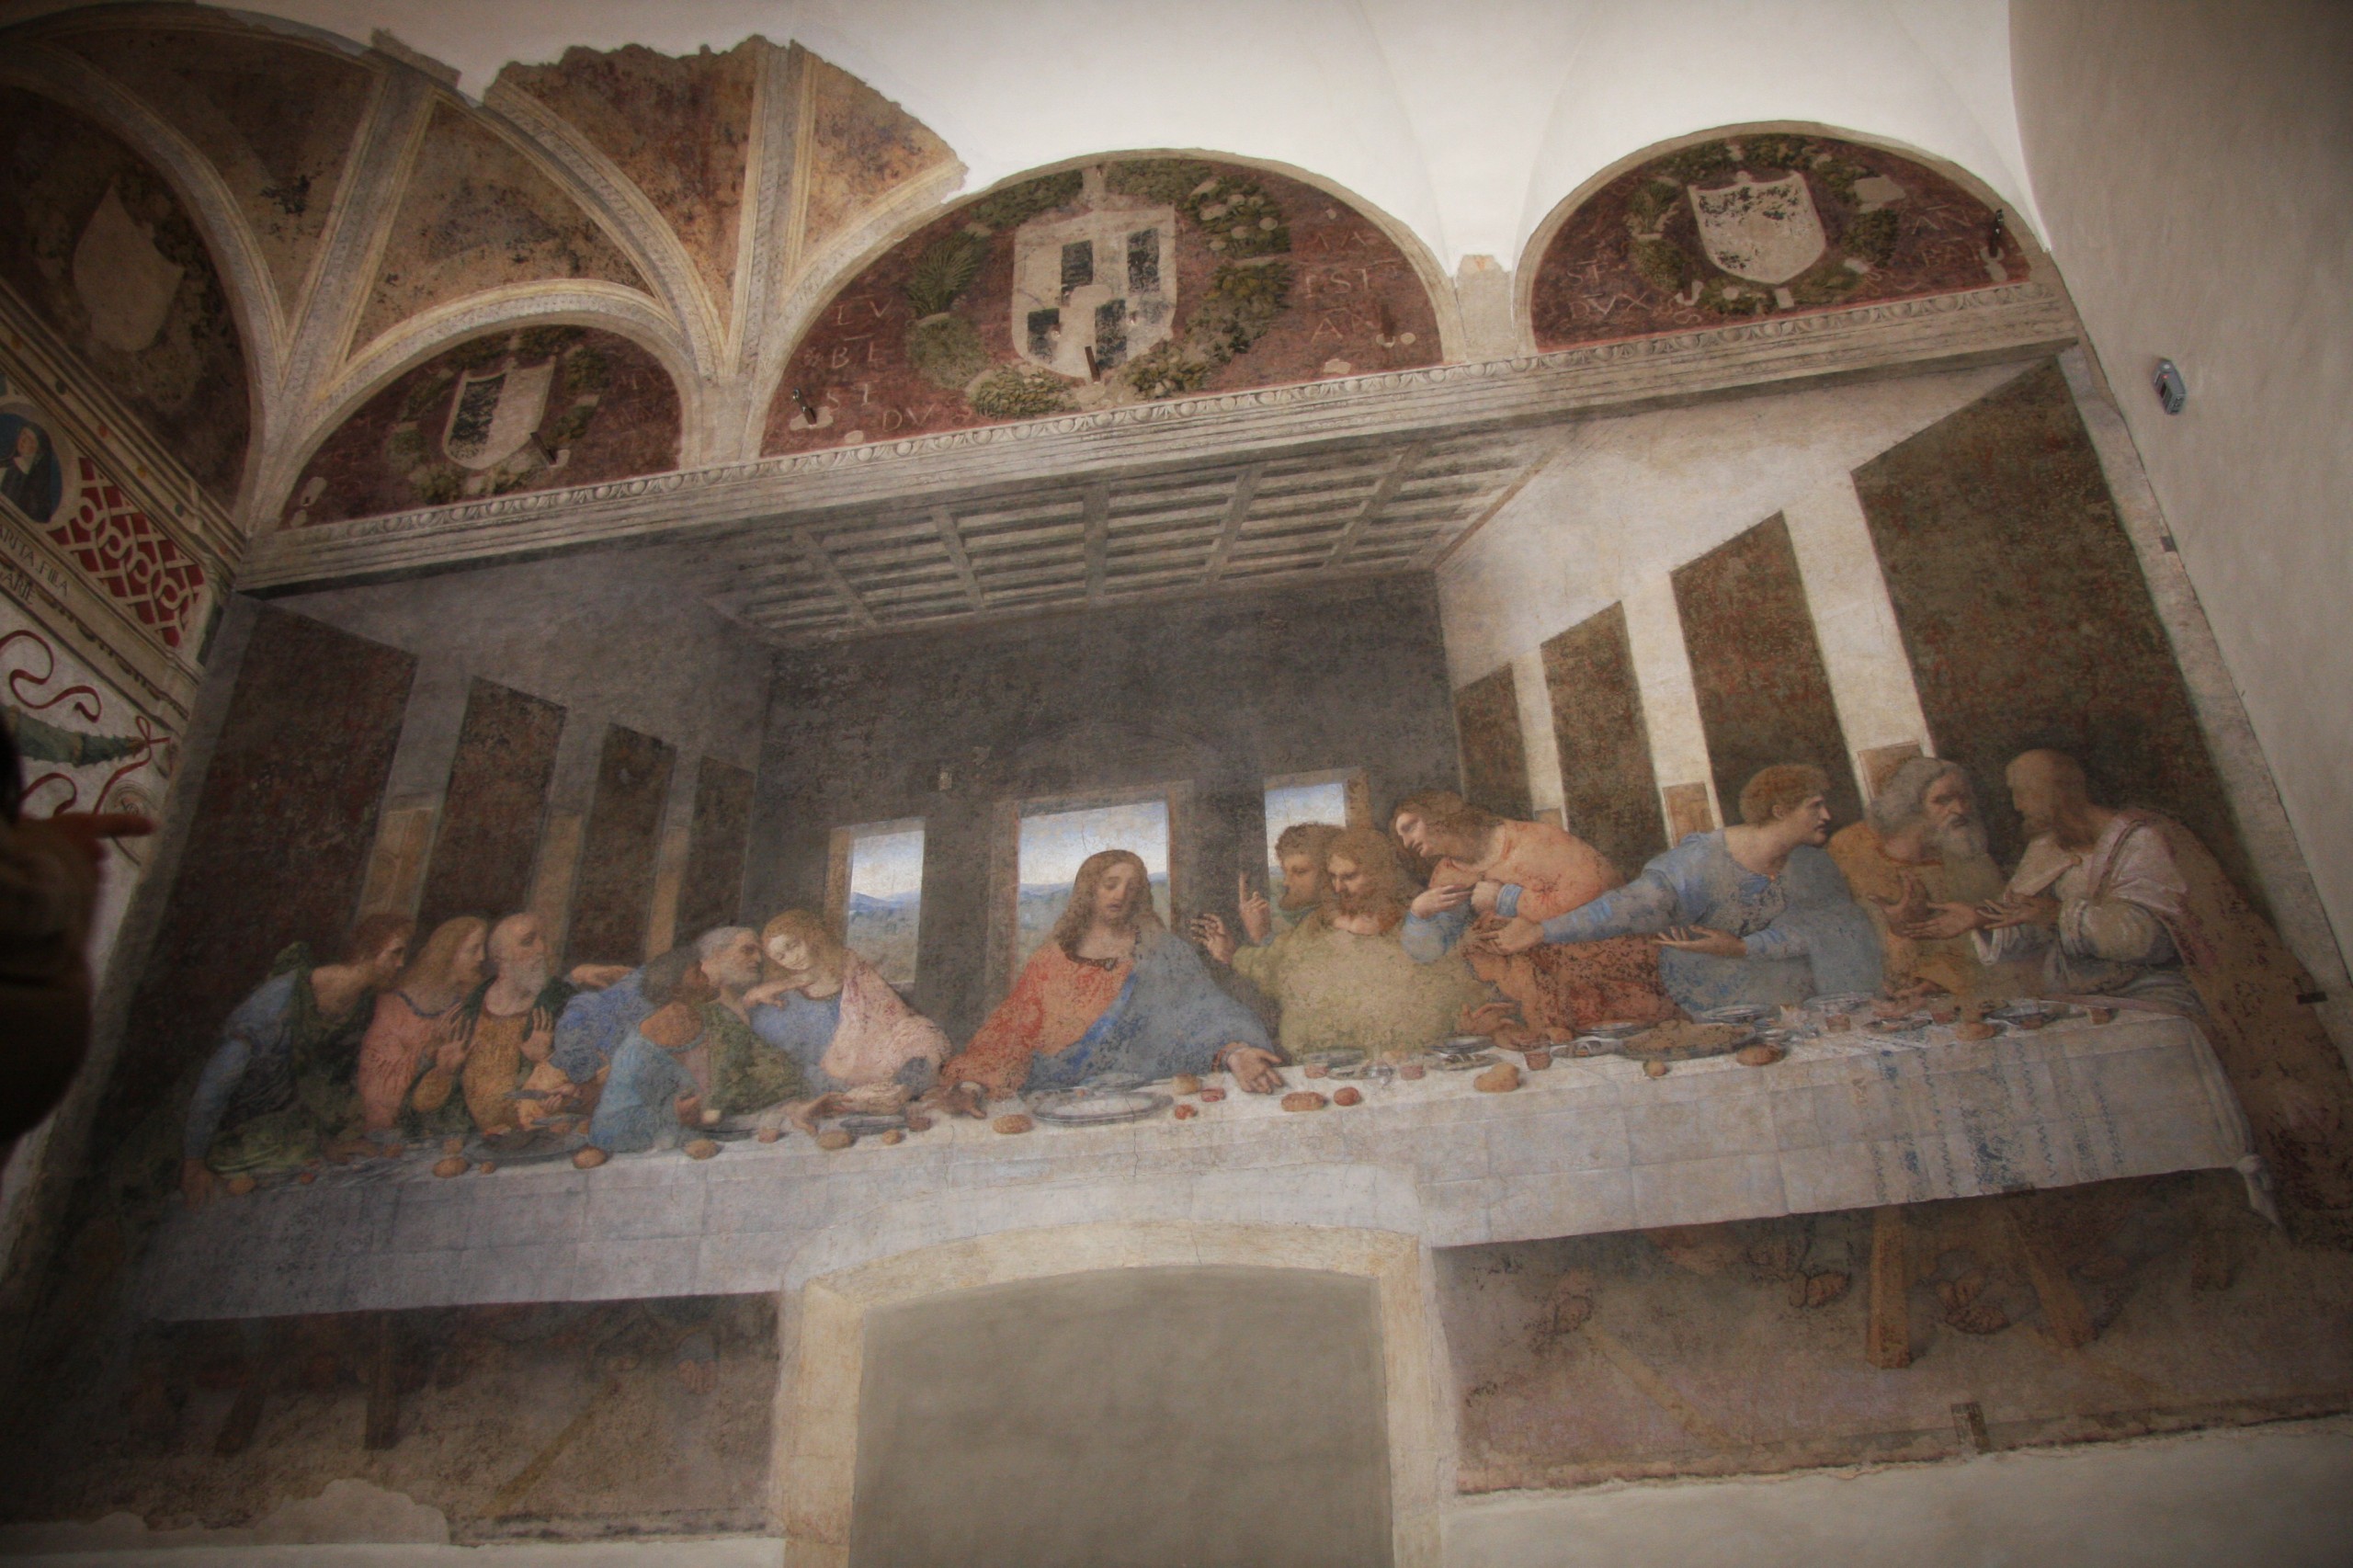 The Last Supper, a fresco by Leonardo da Vinci